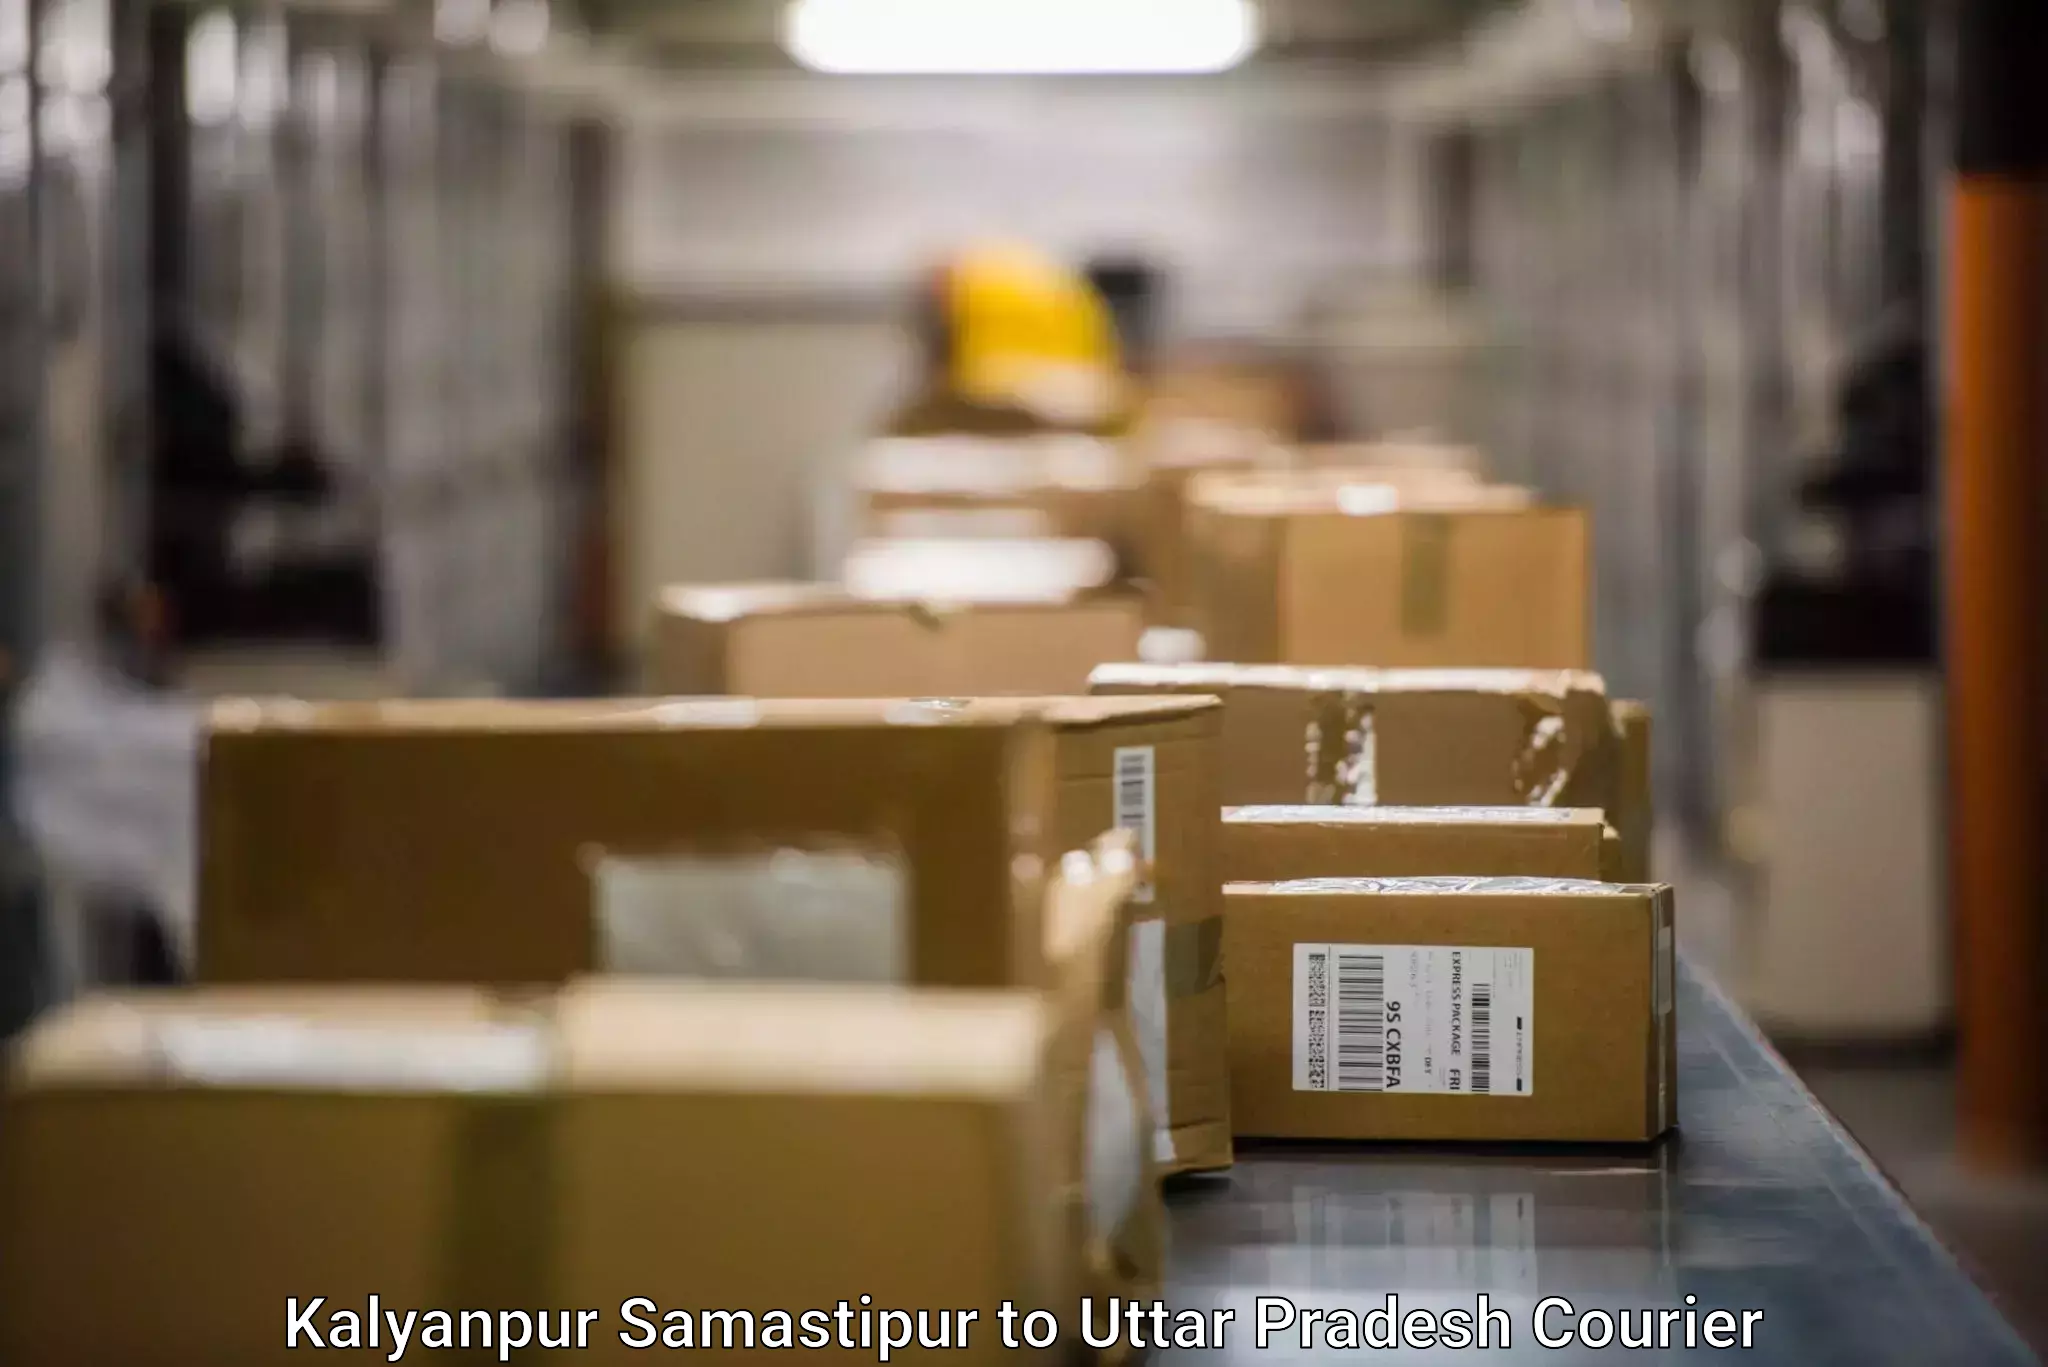 High-speed parcel service Kalyanpur Samastipur to Bhathat